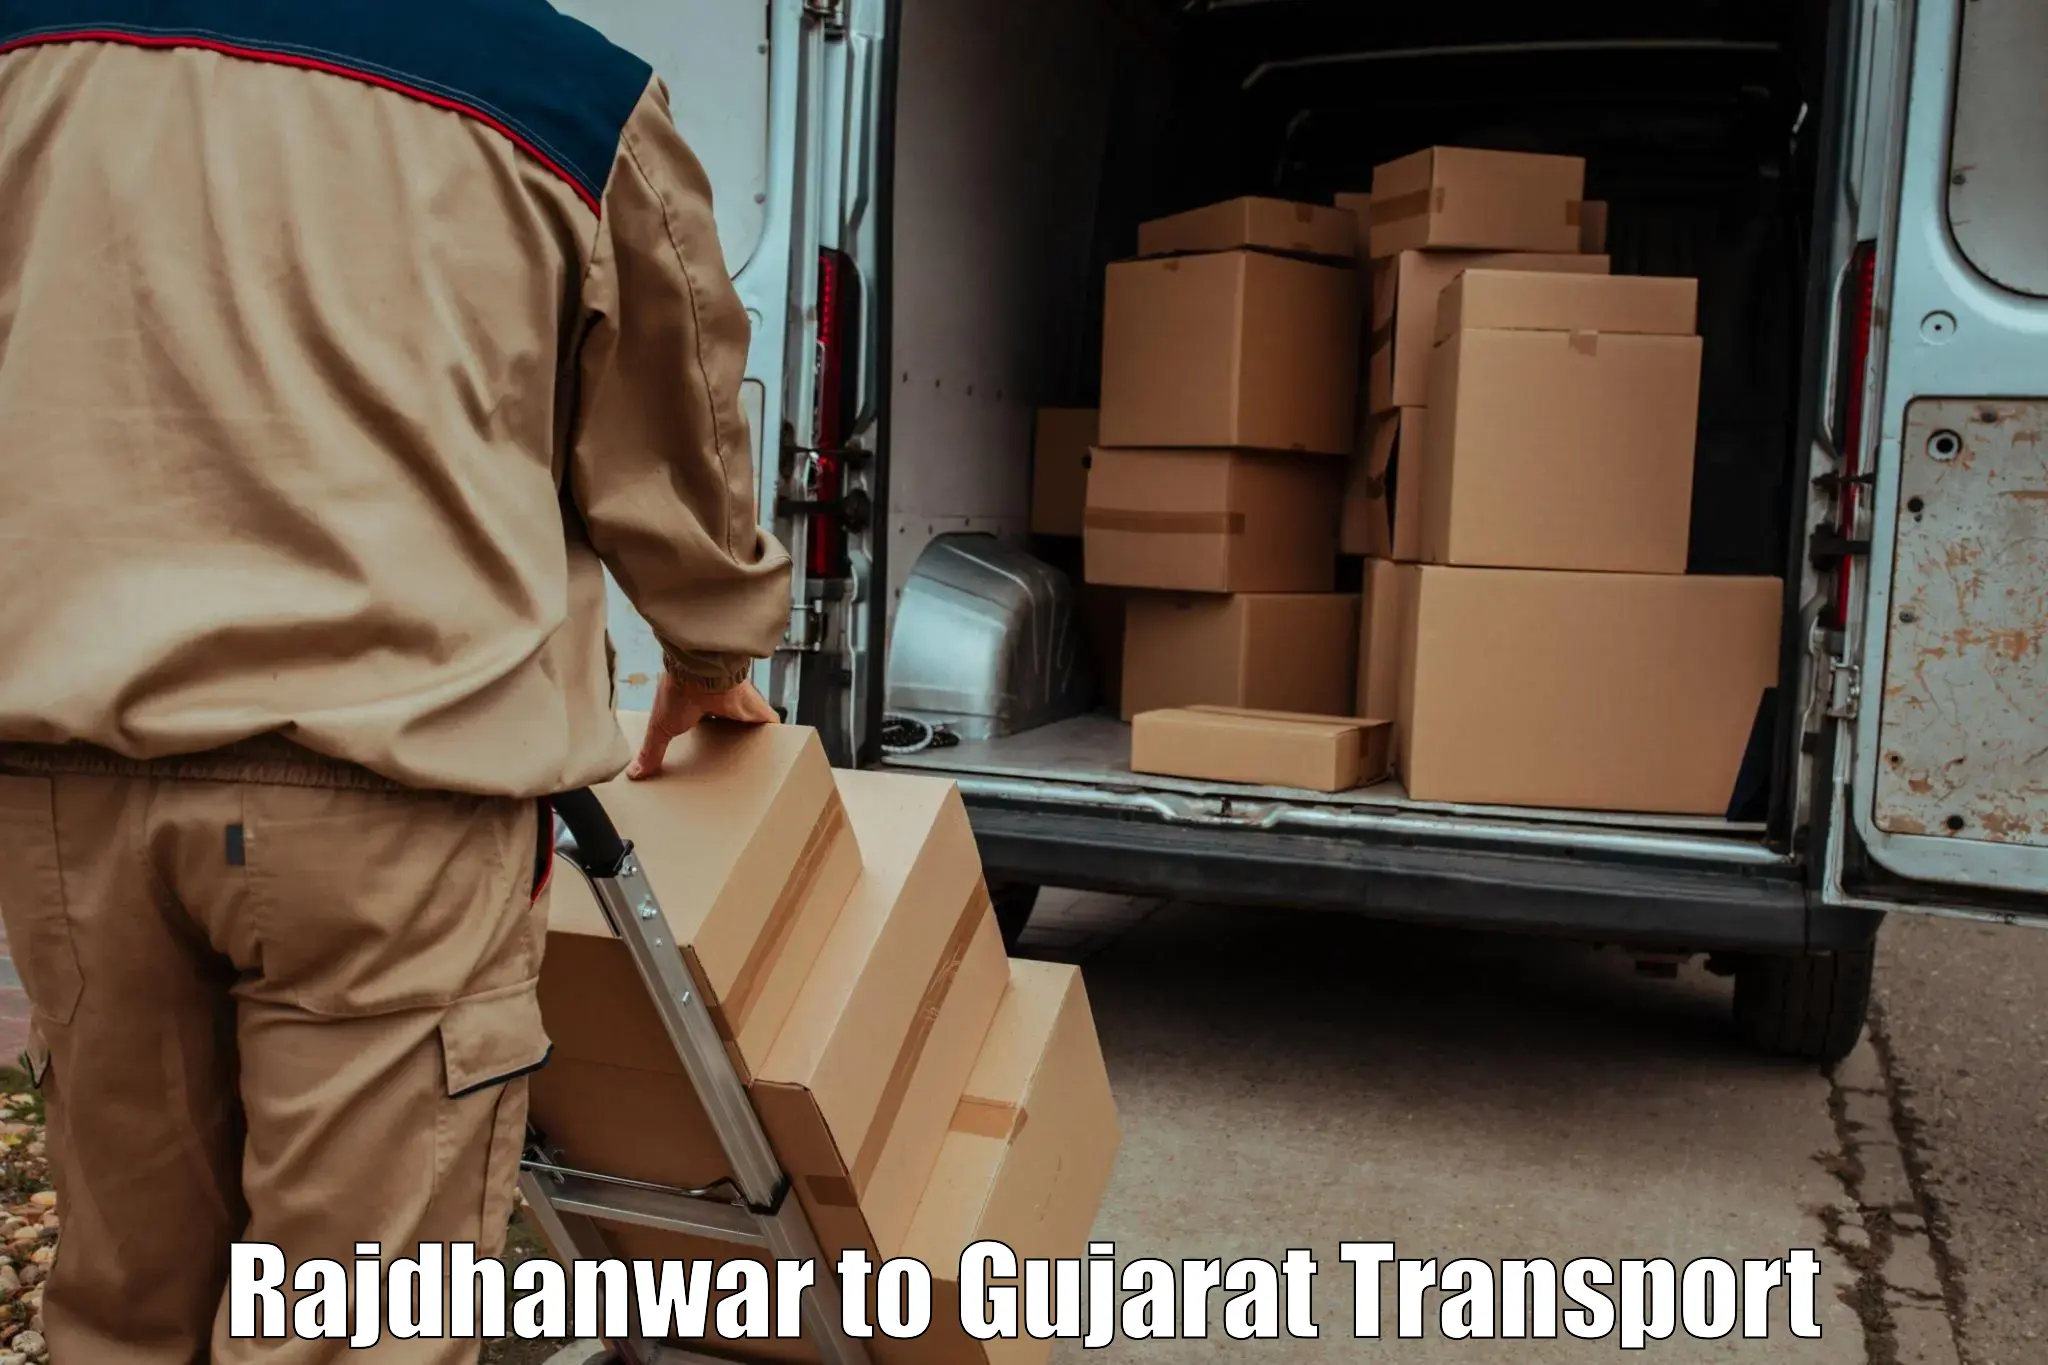 Daily parcel service transport Rajdhanwar to Mahesana